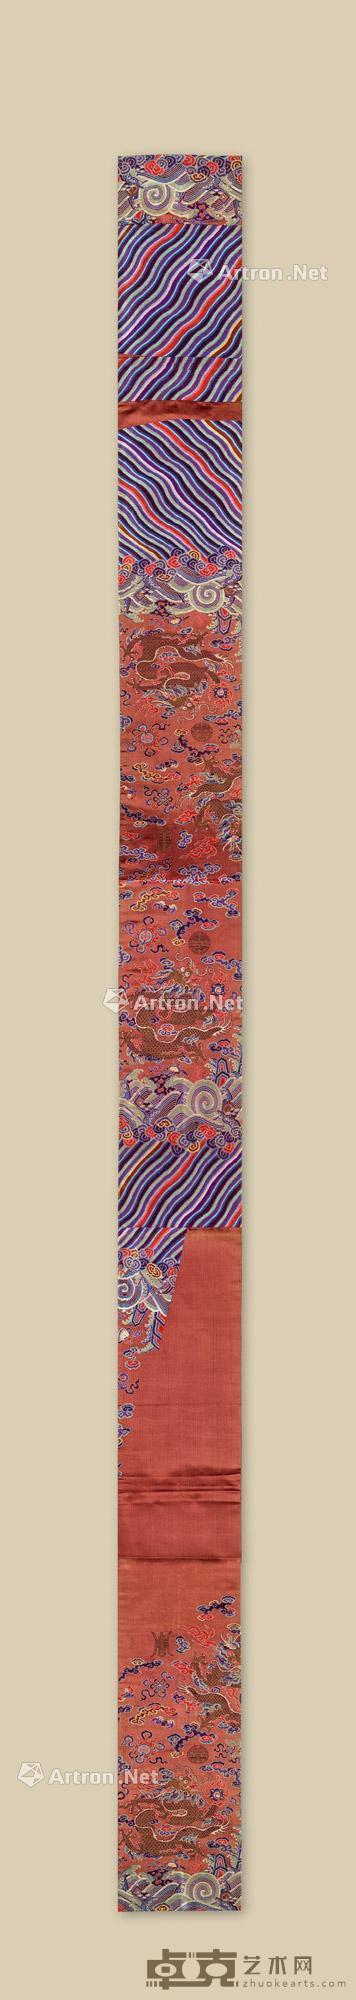  清代 红地龙纹刺绣 长30.5cm；高428cm